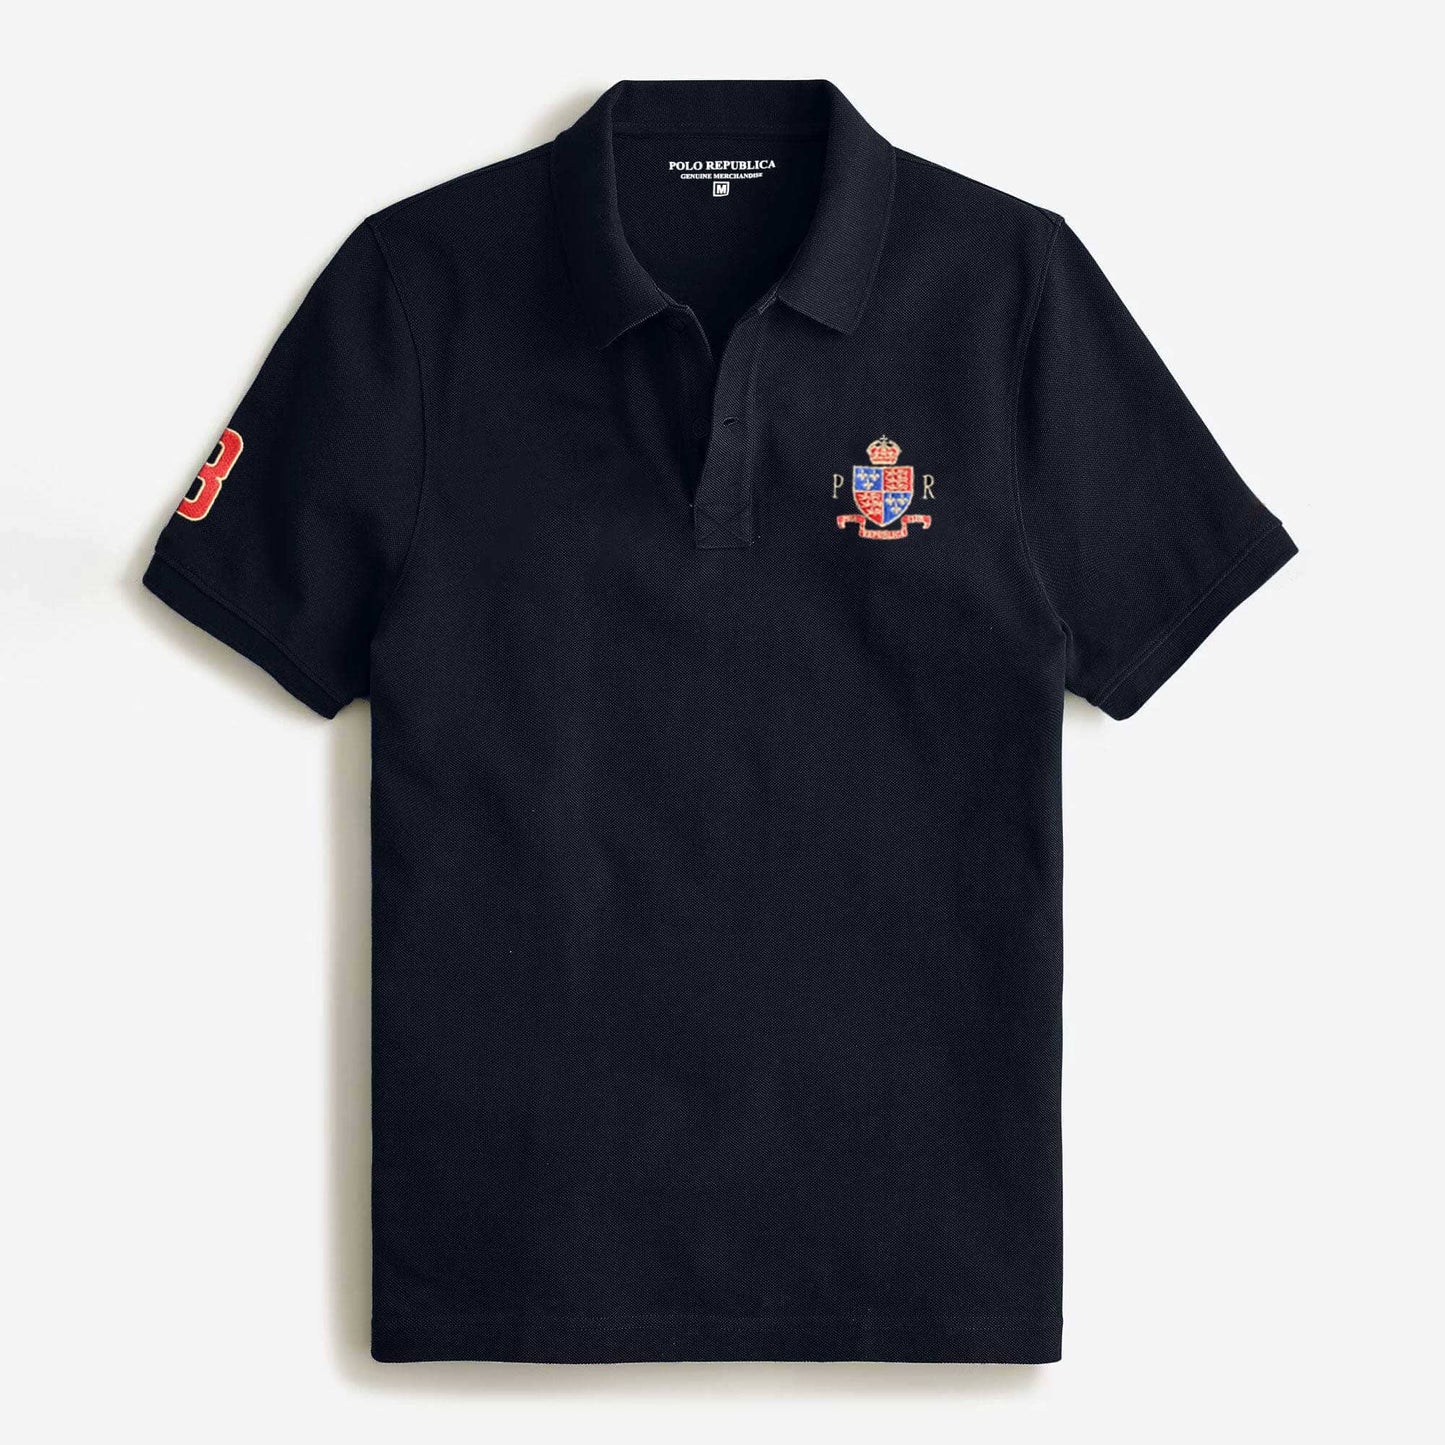 Polo Republica Men's PR Crest & 8 Embroidered Short Sleeve Polo Shirt Men's Polo Shirt Polo Republica 